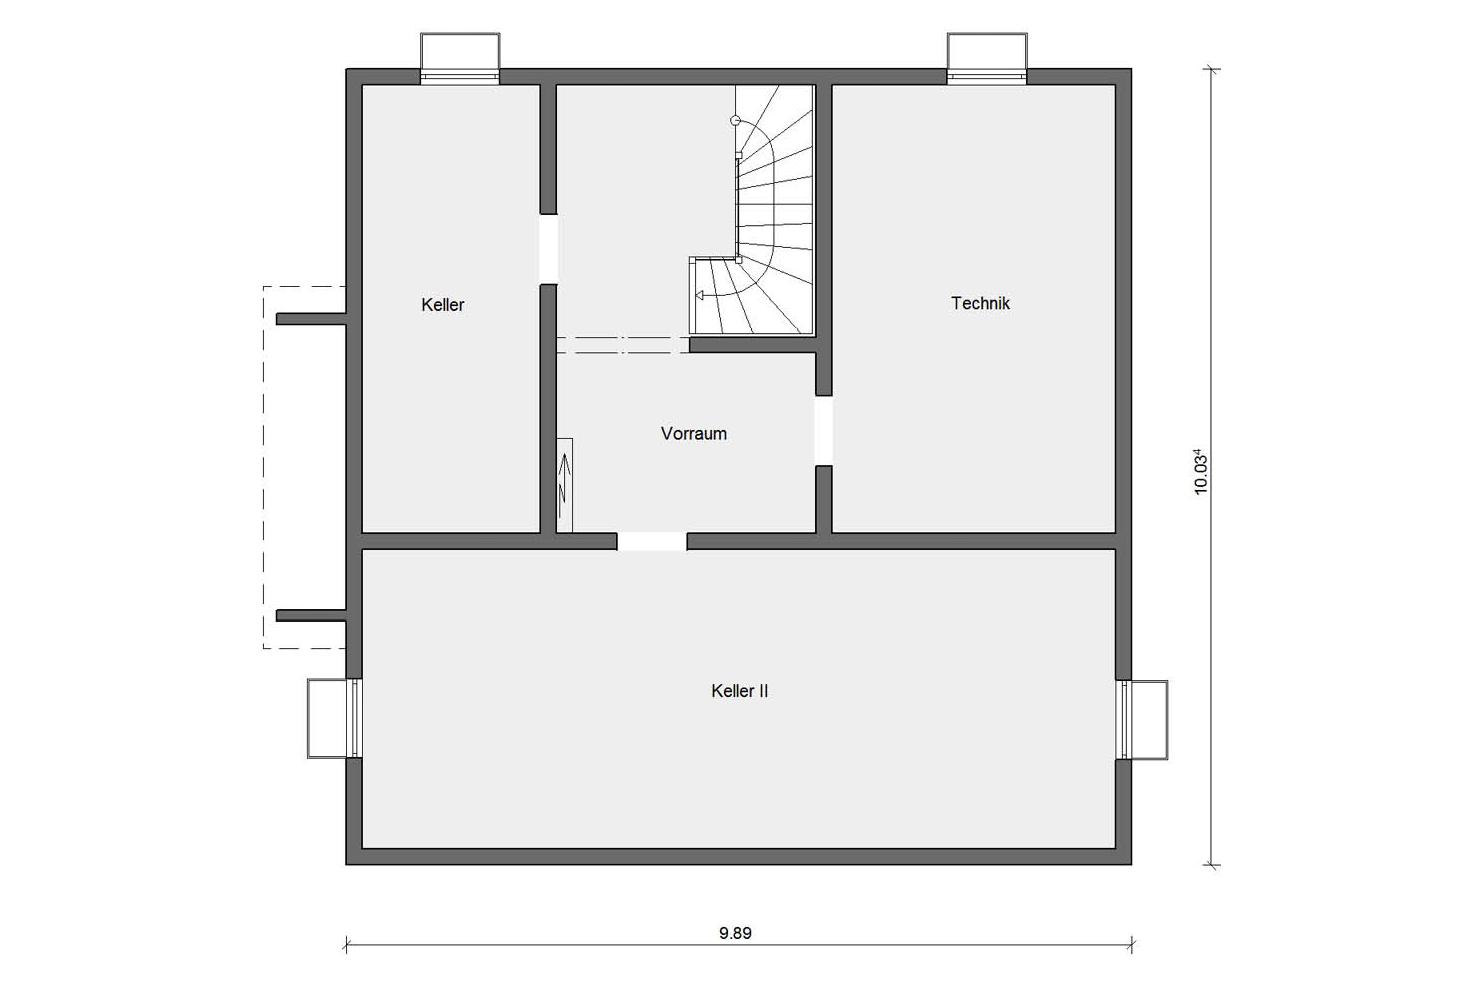 Floor plan basement floor M 15-179.2 Detached house with studio flat